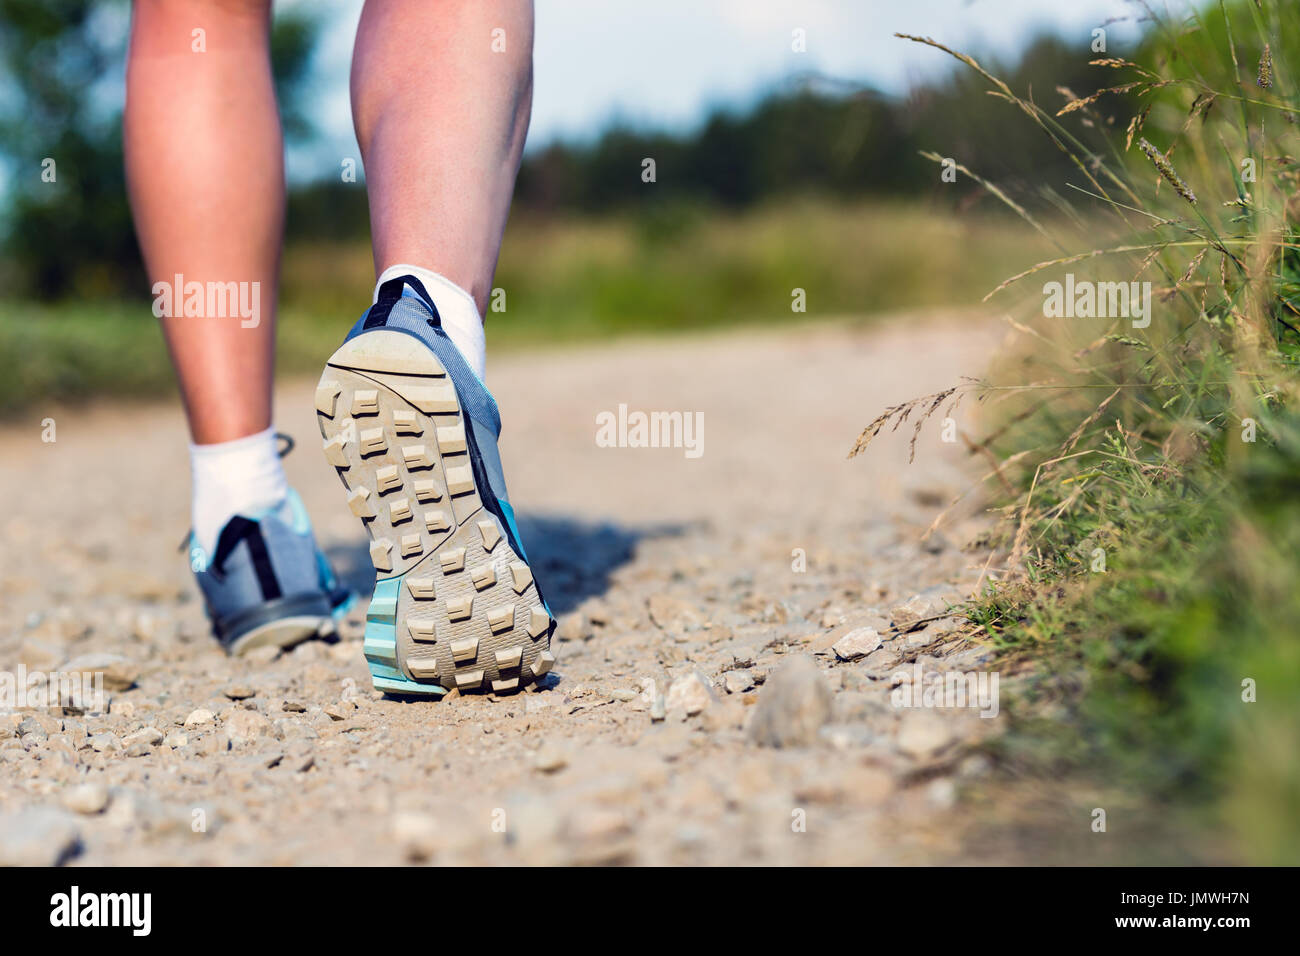 Frau im Sport oder Wandern Schuhe. Joggen, Wandern oder training draußen im Sommer Natur, inspirierenden, motivierenden Gesundheits- und Fitness-Konzept. Stockfoto